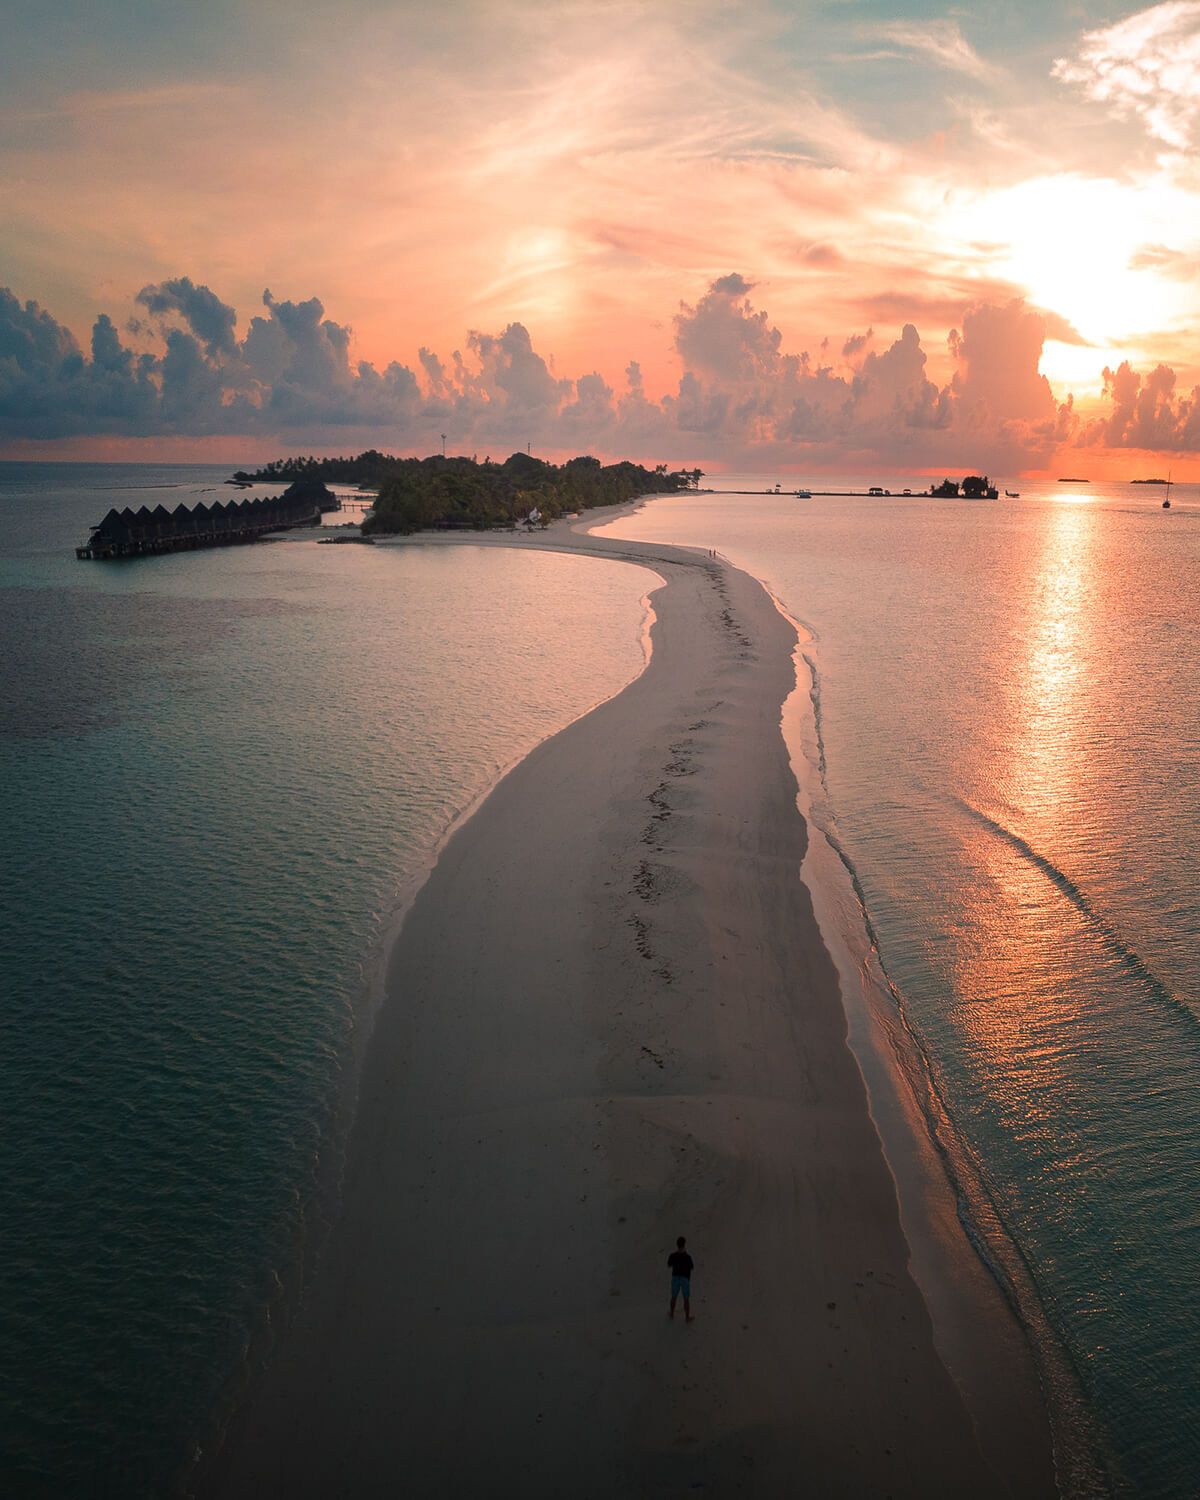 Amazing sunrise on Kuredu Island, Maldives